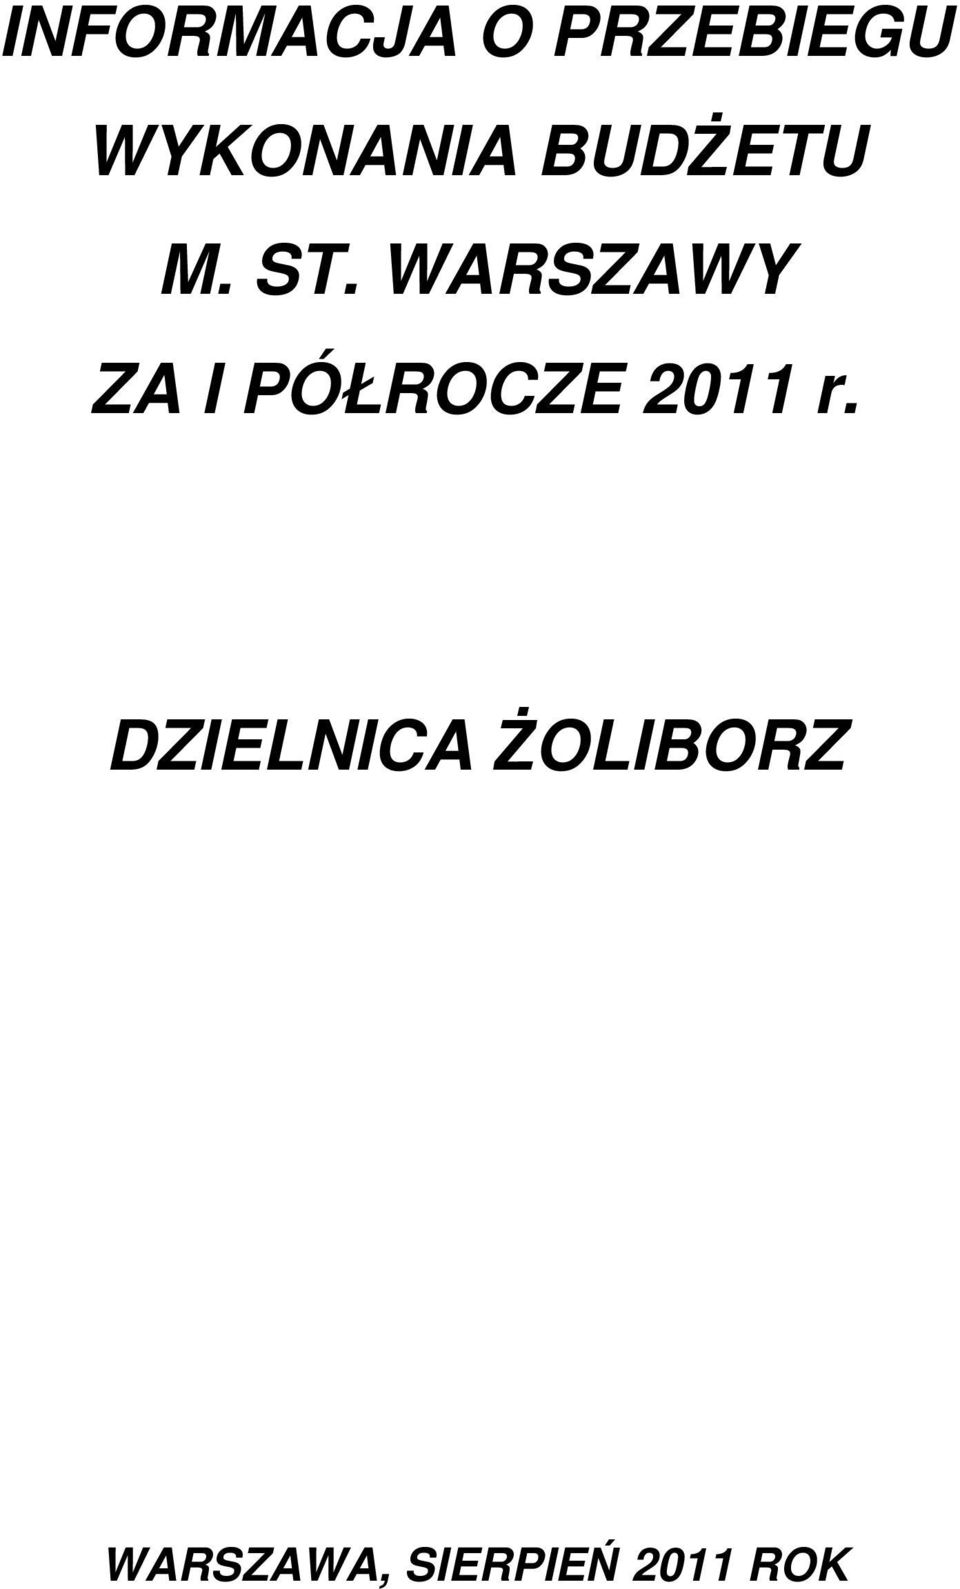 WARSZAWY ZA I PÓŁROCZE 2011 r.